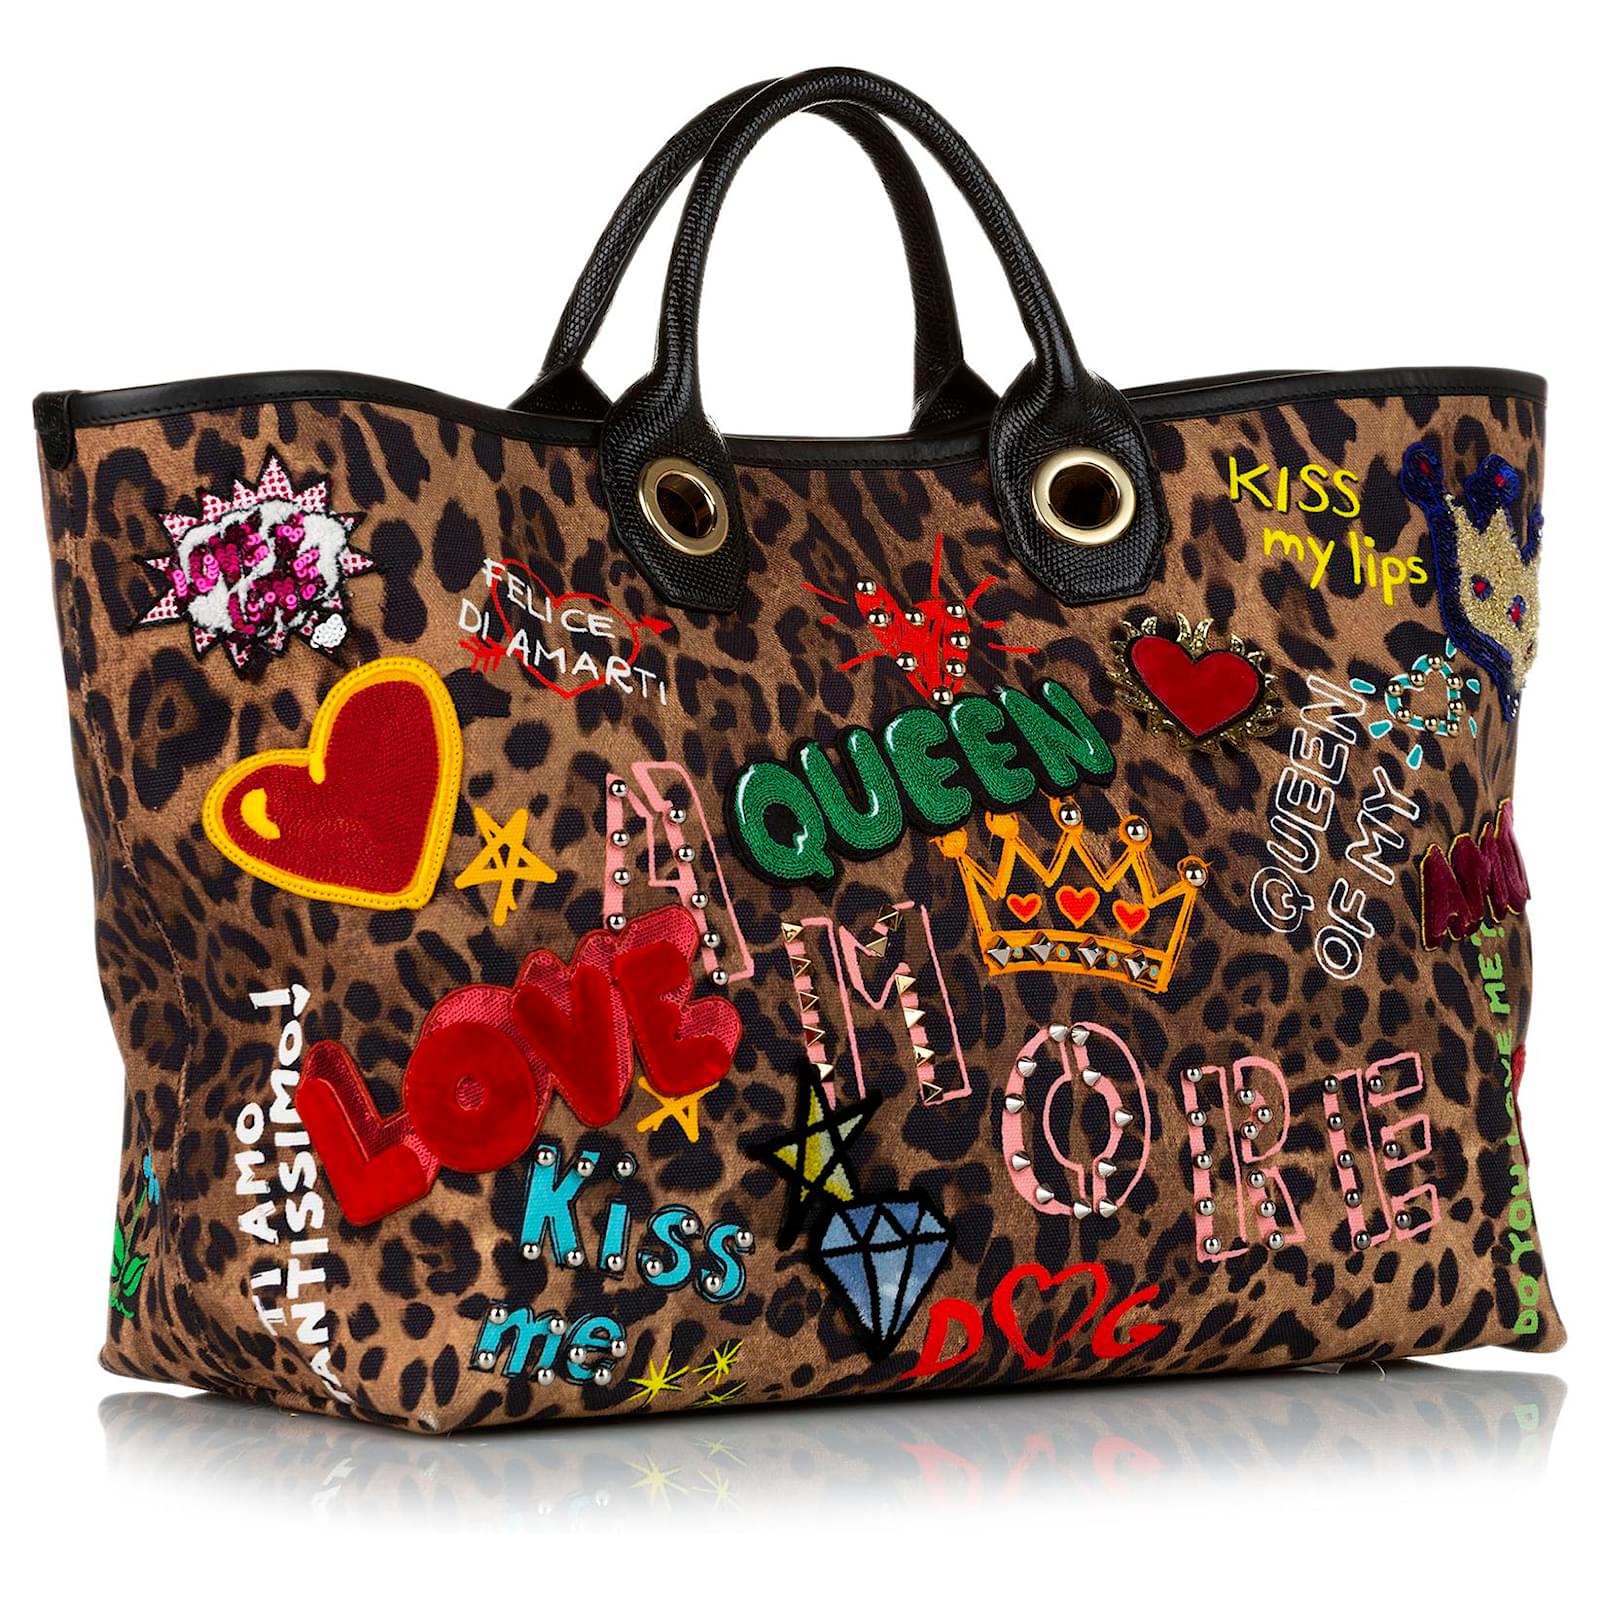 Dolce & Gabbana – Leopard Print Crossbody Bag – Queen Station